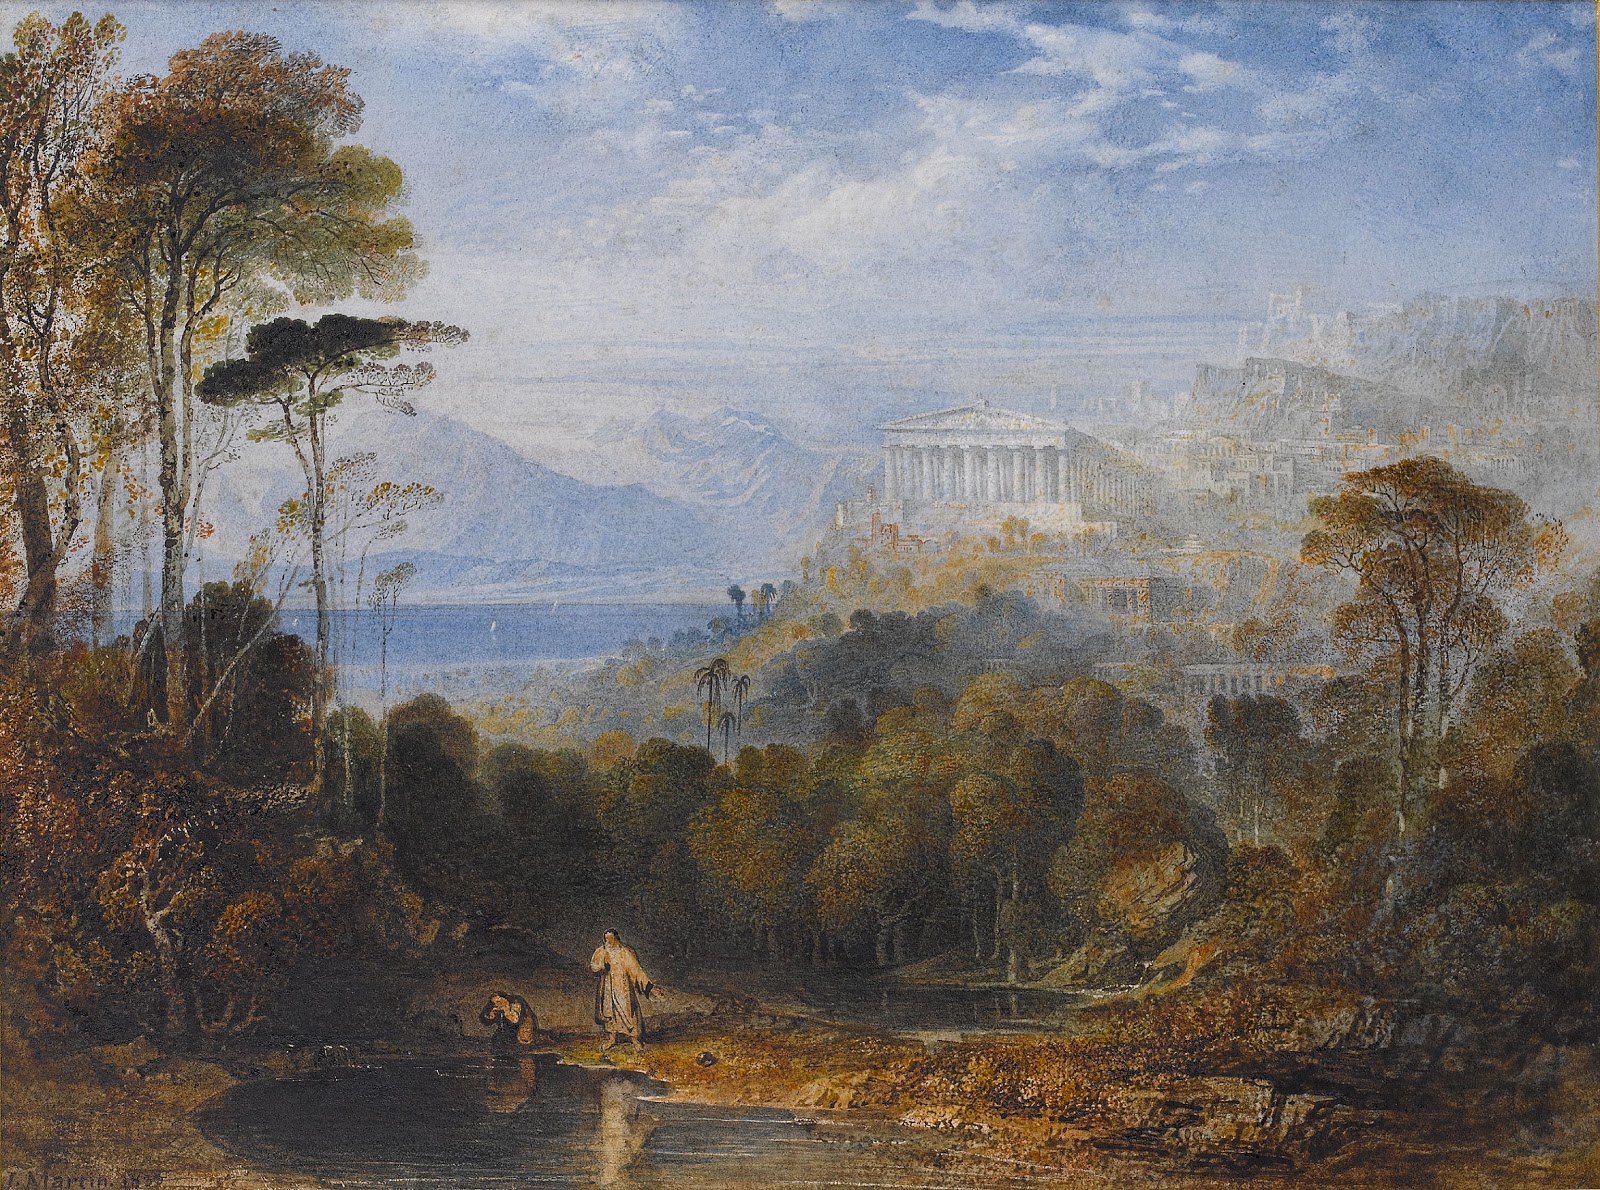 John+Martin+Landscape-1789-1854 (41).jpg